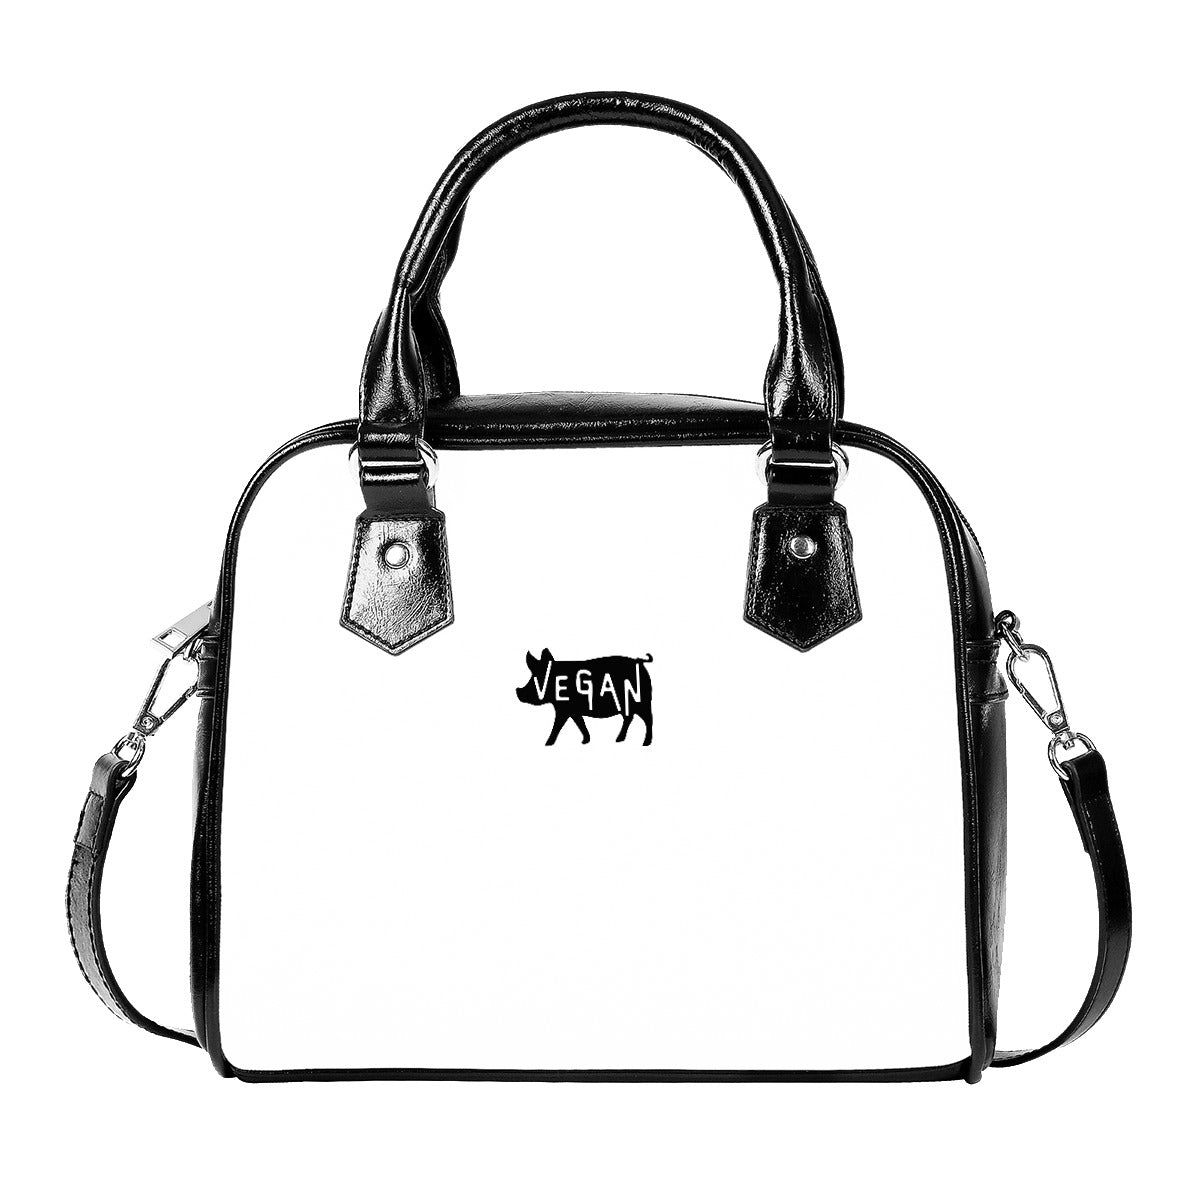 VEGAN Faux Leather Designer Handbag With Single Shoulder Strap